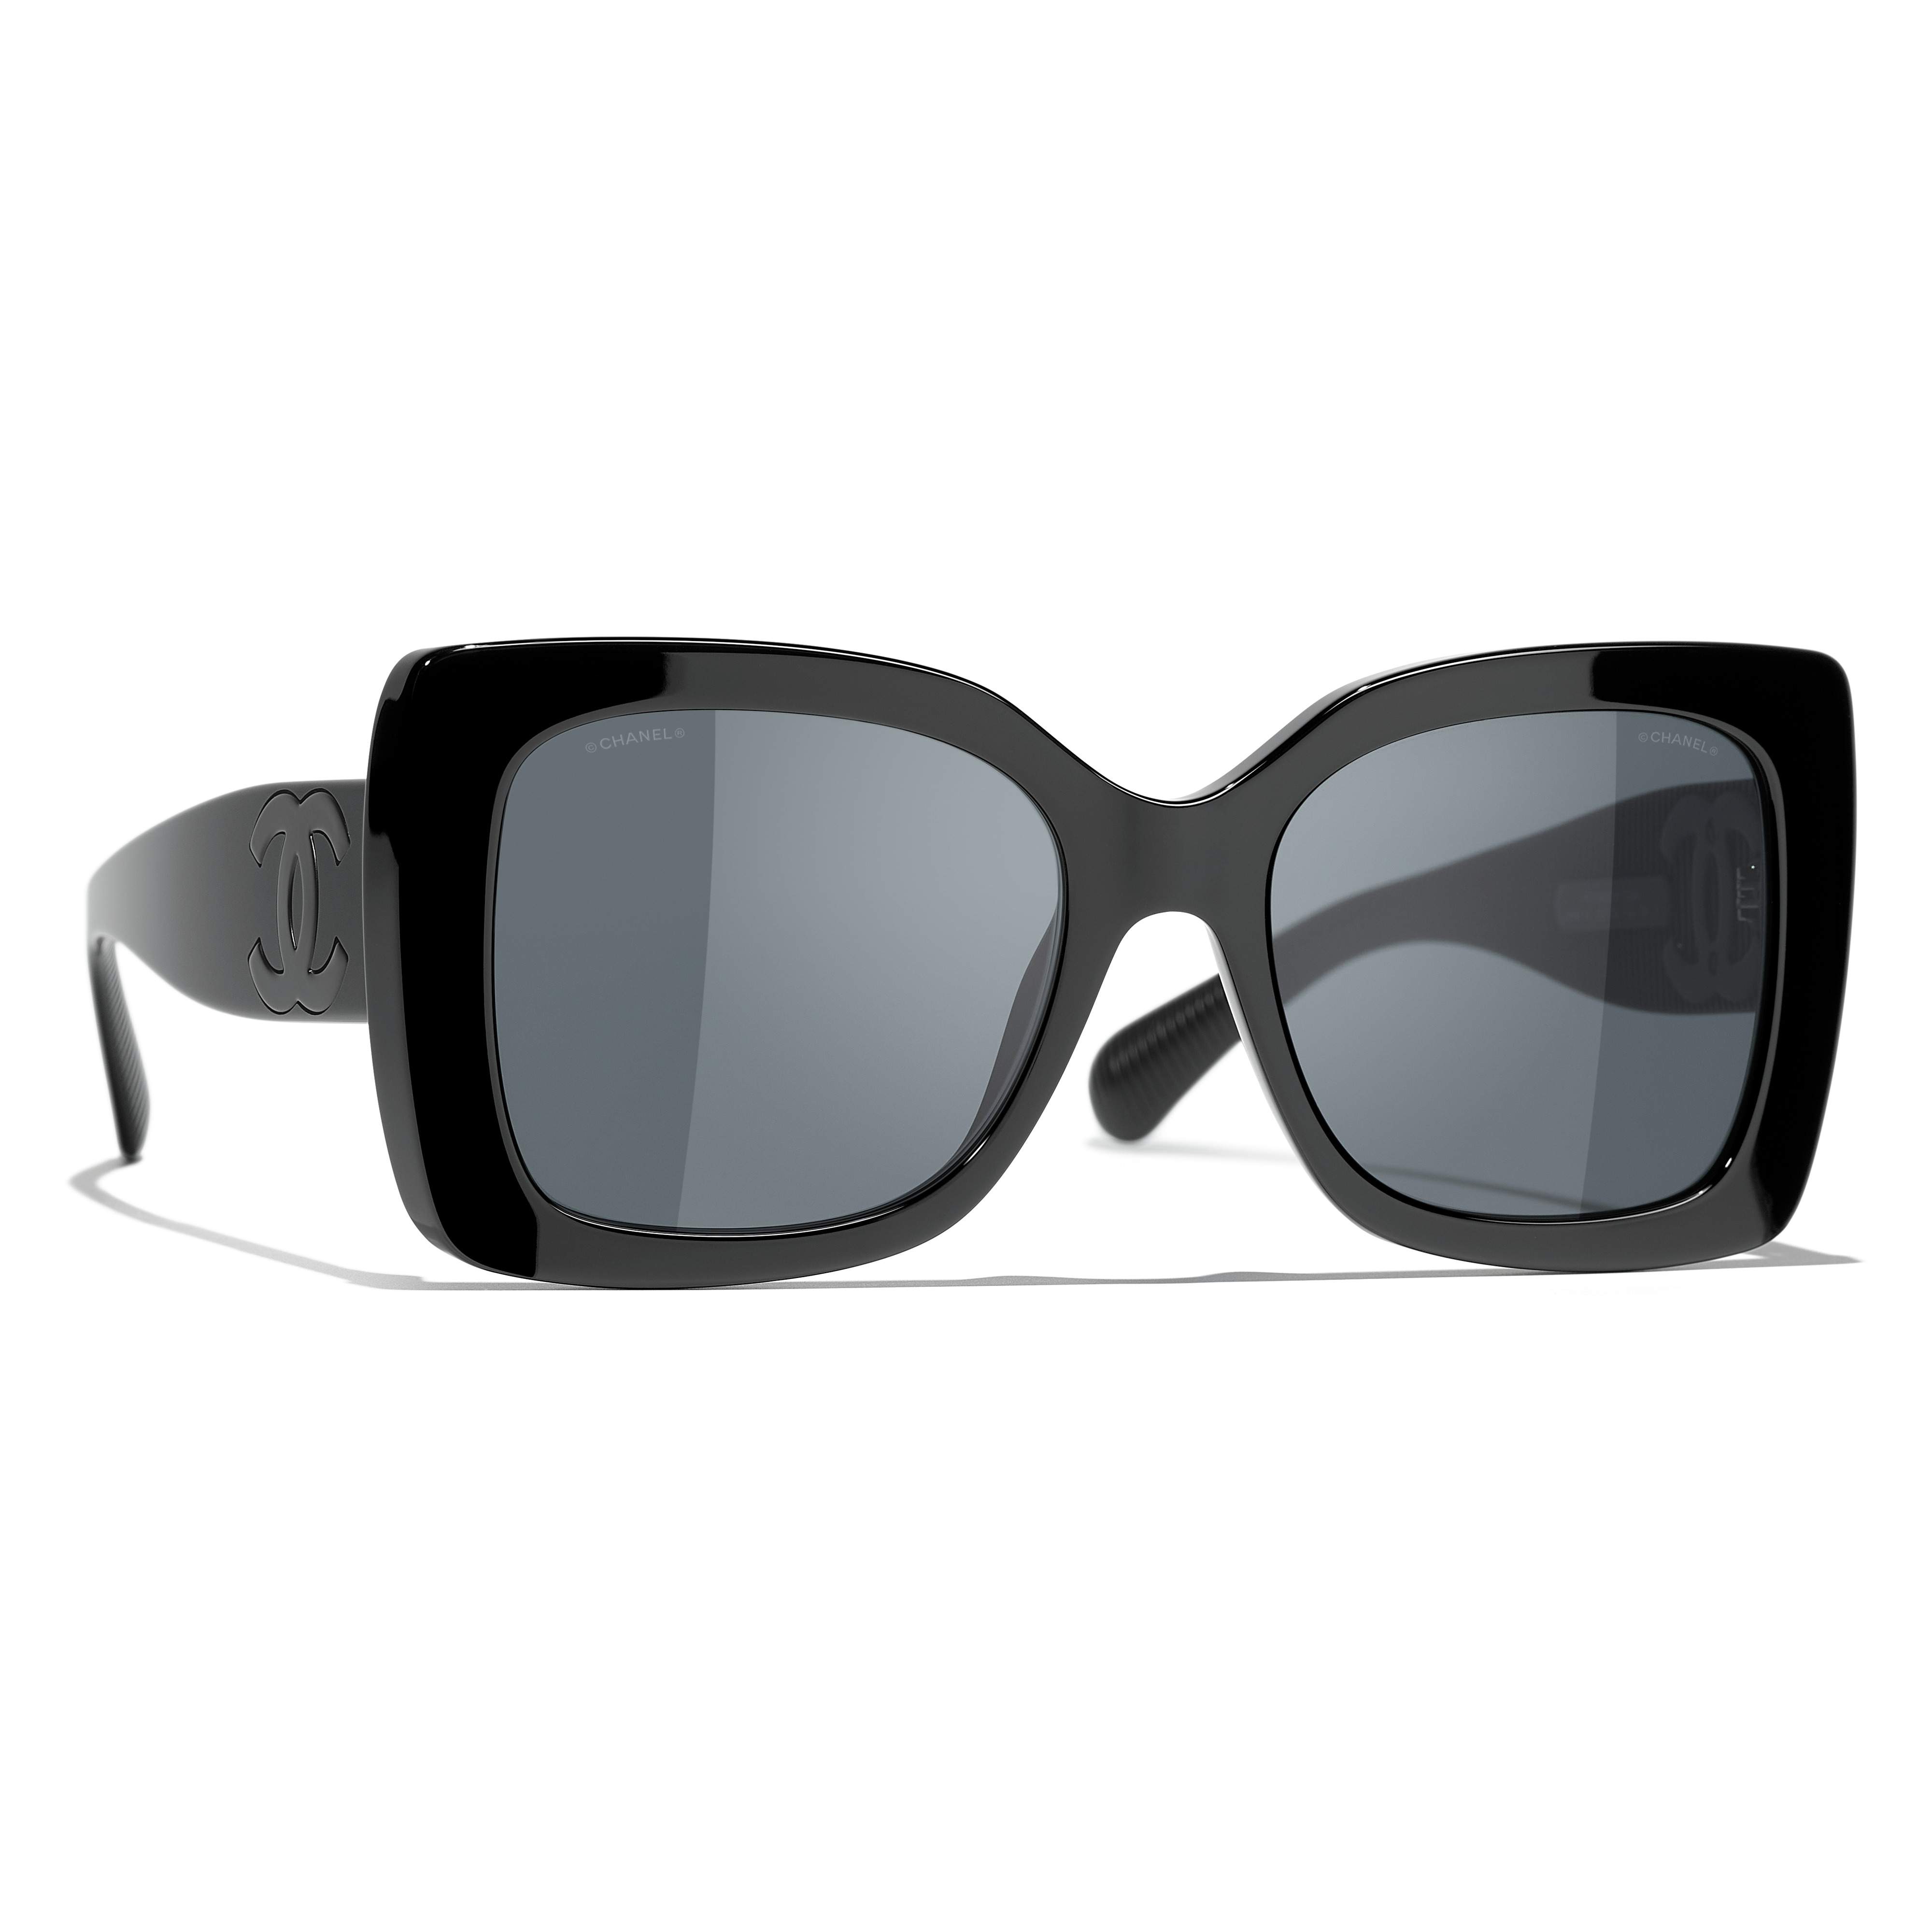 Sunglasses CHANEL CH5494 C888S4 53-18 Black in stock, Price 258,33 €